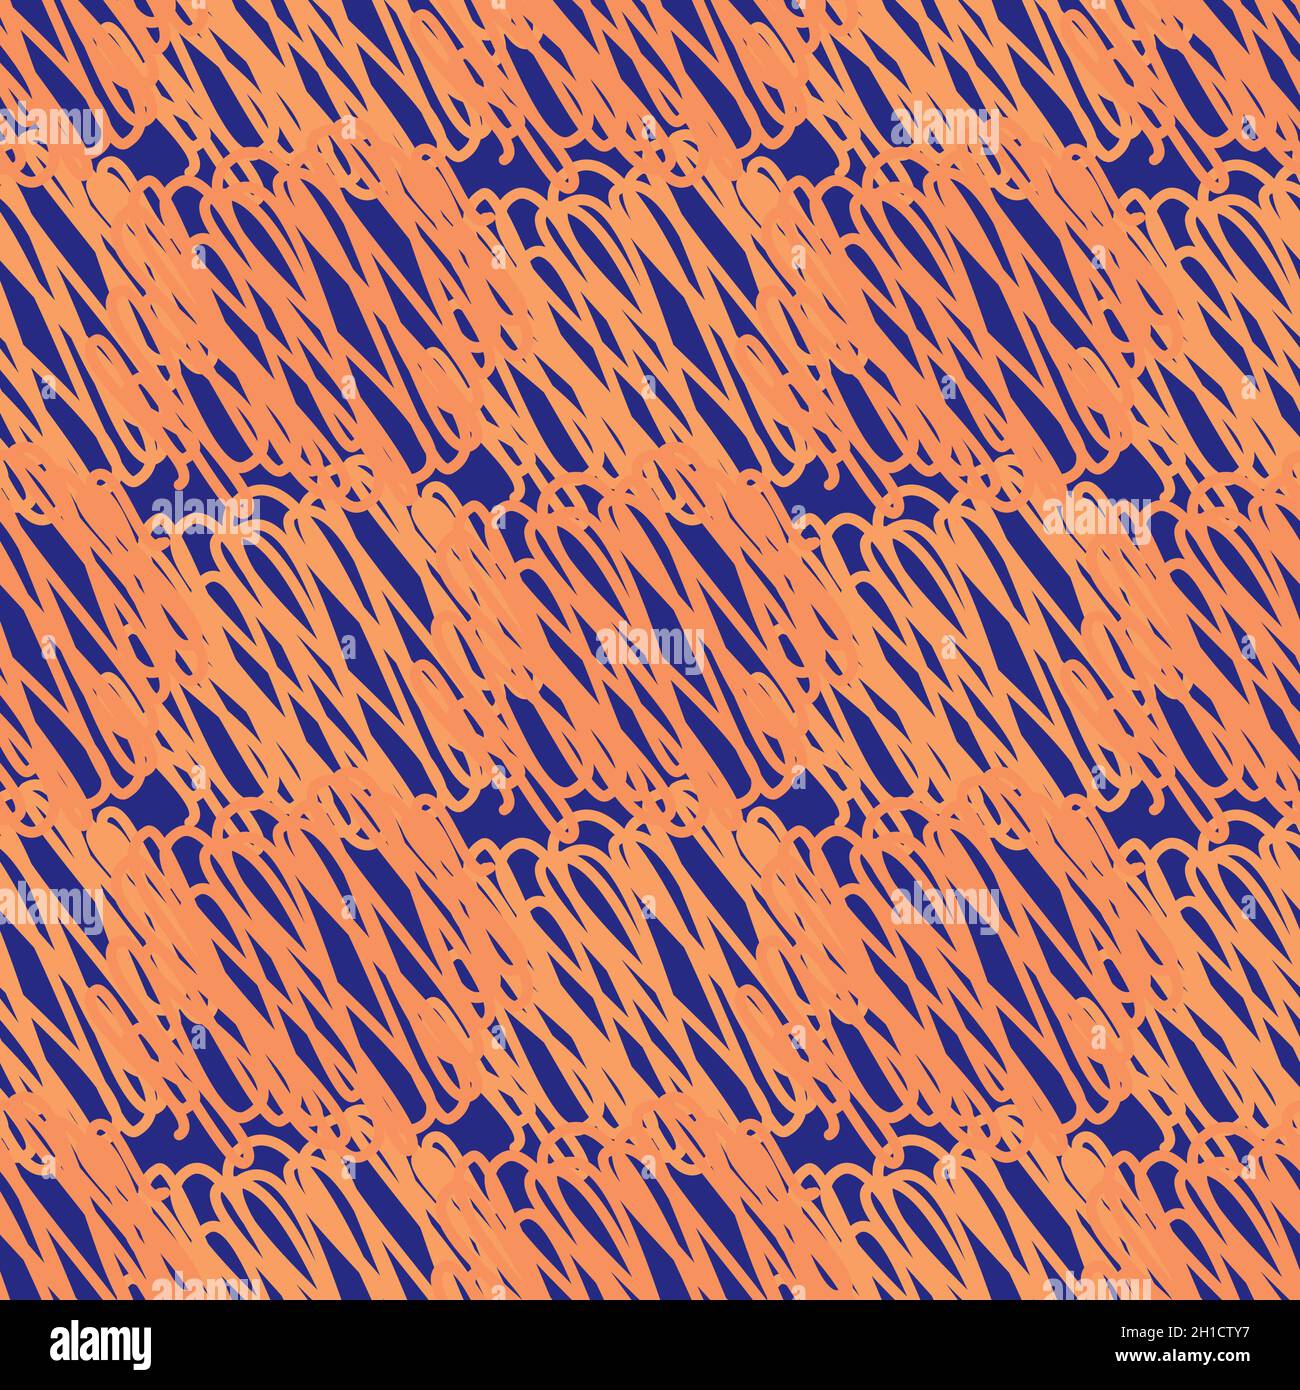 Abstrakt gestrickt Vektor Muster Textur Hintergrund. Orangeblauer Hintergrund mit unregelmäßigen Schleifen aus Häkelgarn. REPEAT mit gekritzelter Struktur Stock Vektor